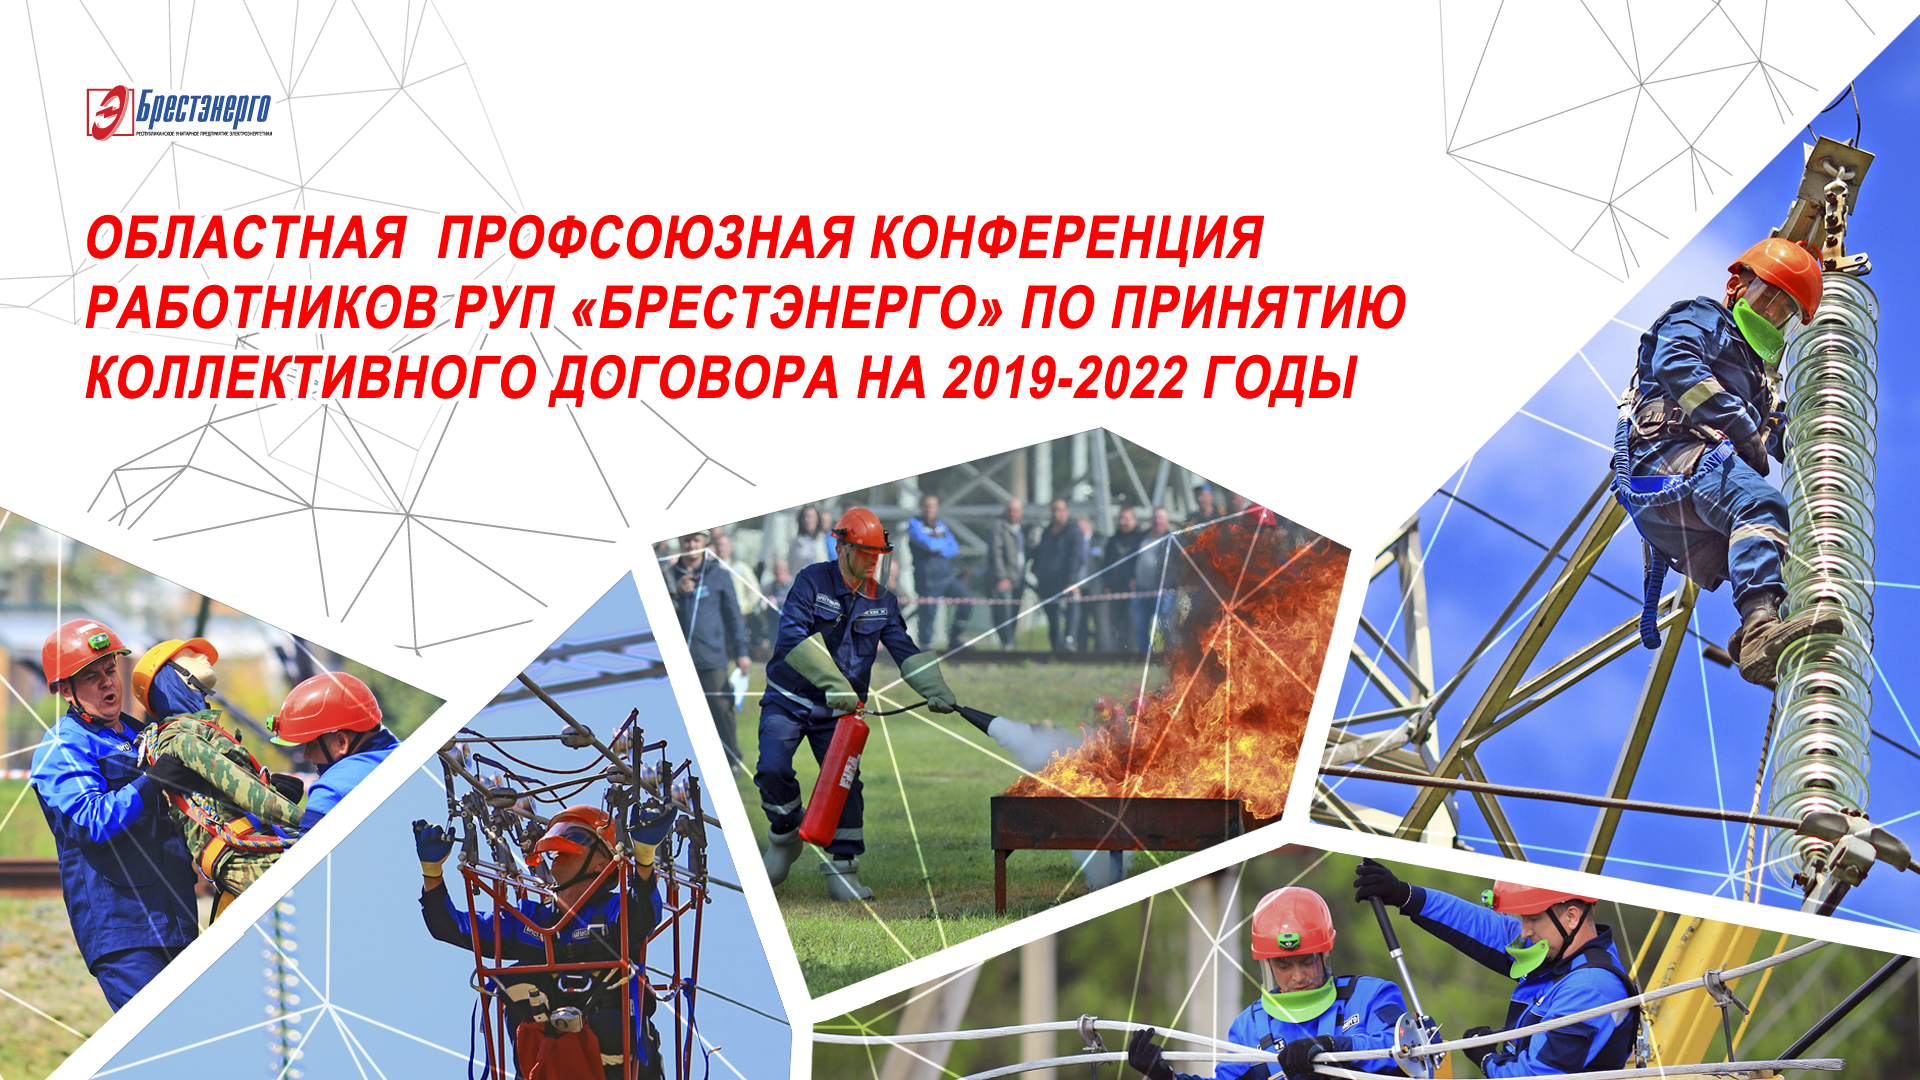 Областная профсоюзная конференция по принятию нового коллективного договора на 2019-2022 годы